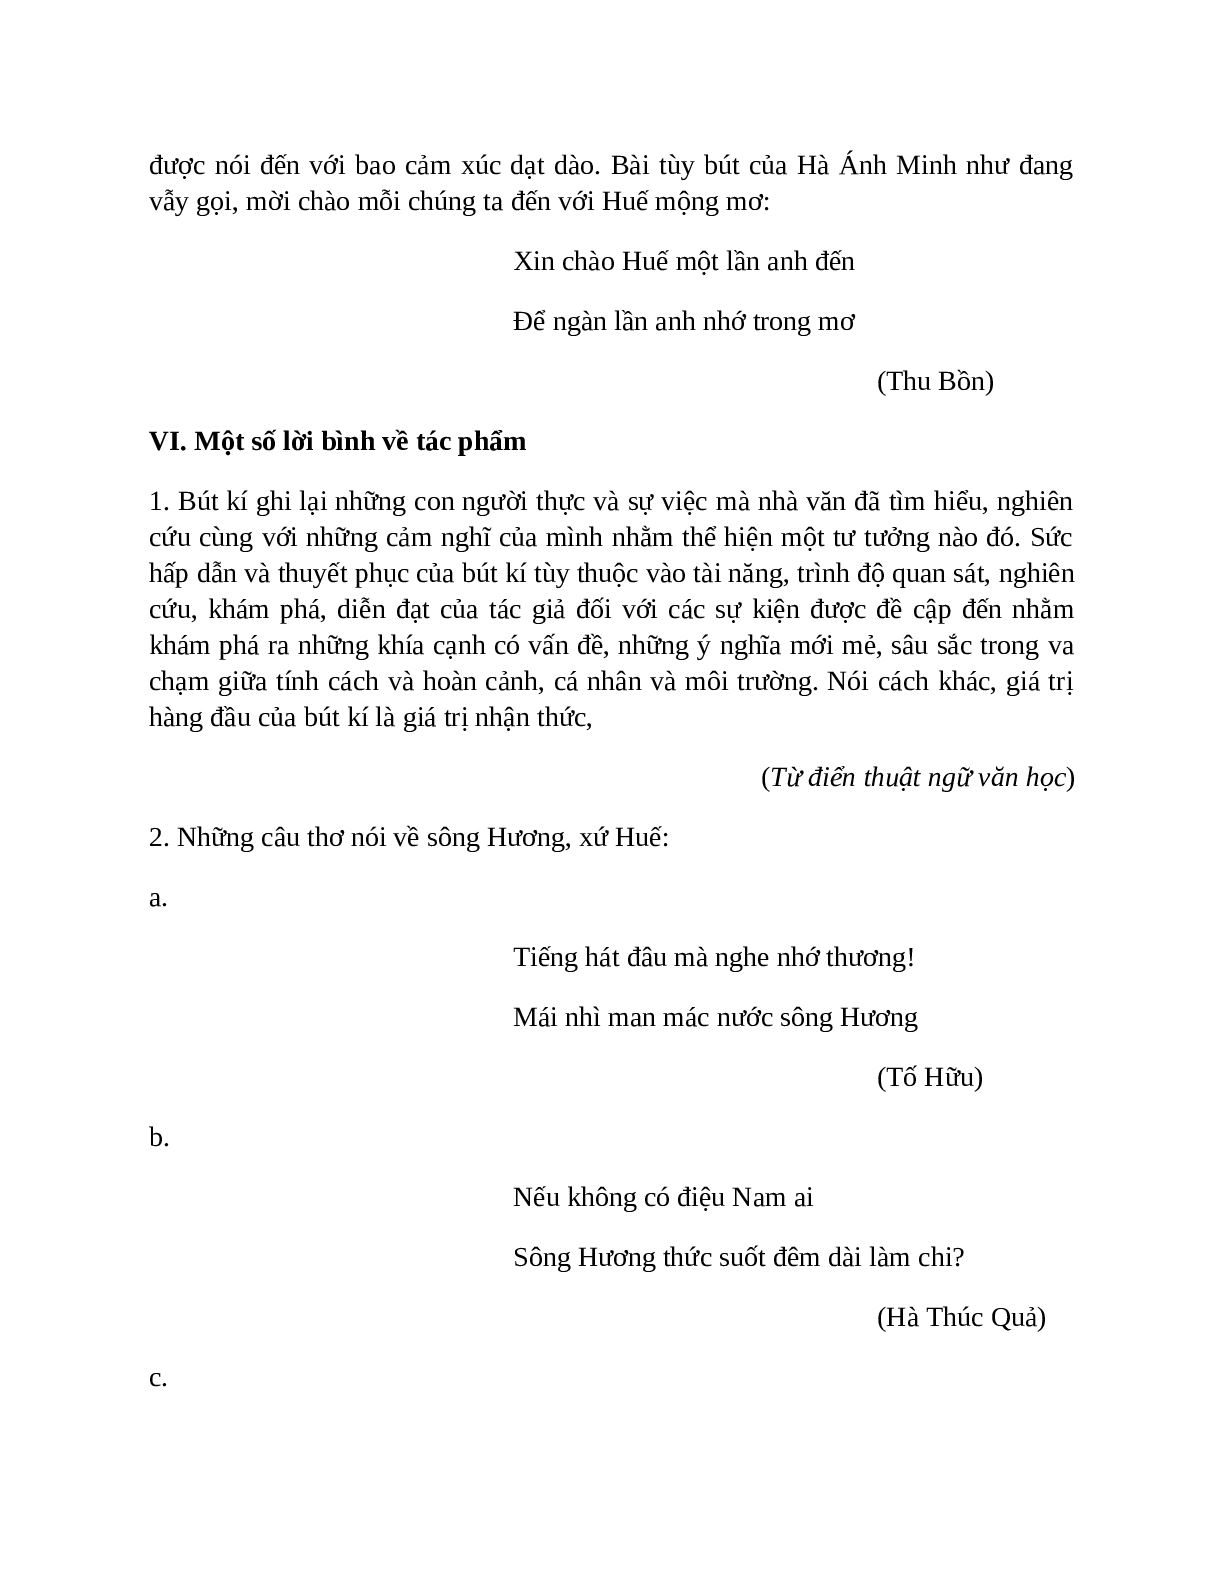 Sơ đồ tư duy bài Ca Huế trên sông Hương dễ nhớ, ngắn nhất - Ngữ văn lớp 7 (trang 7)